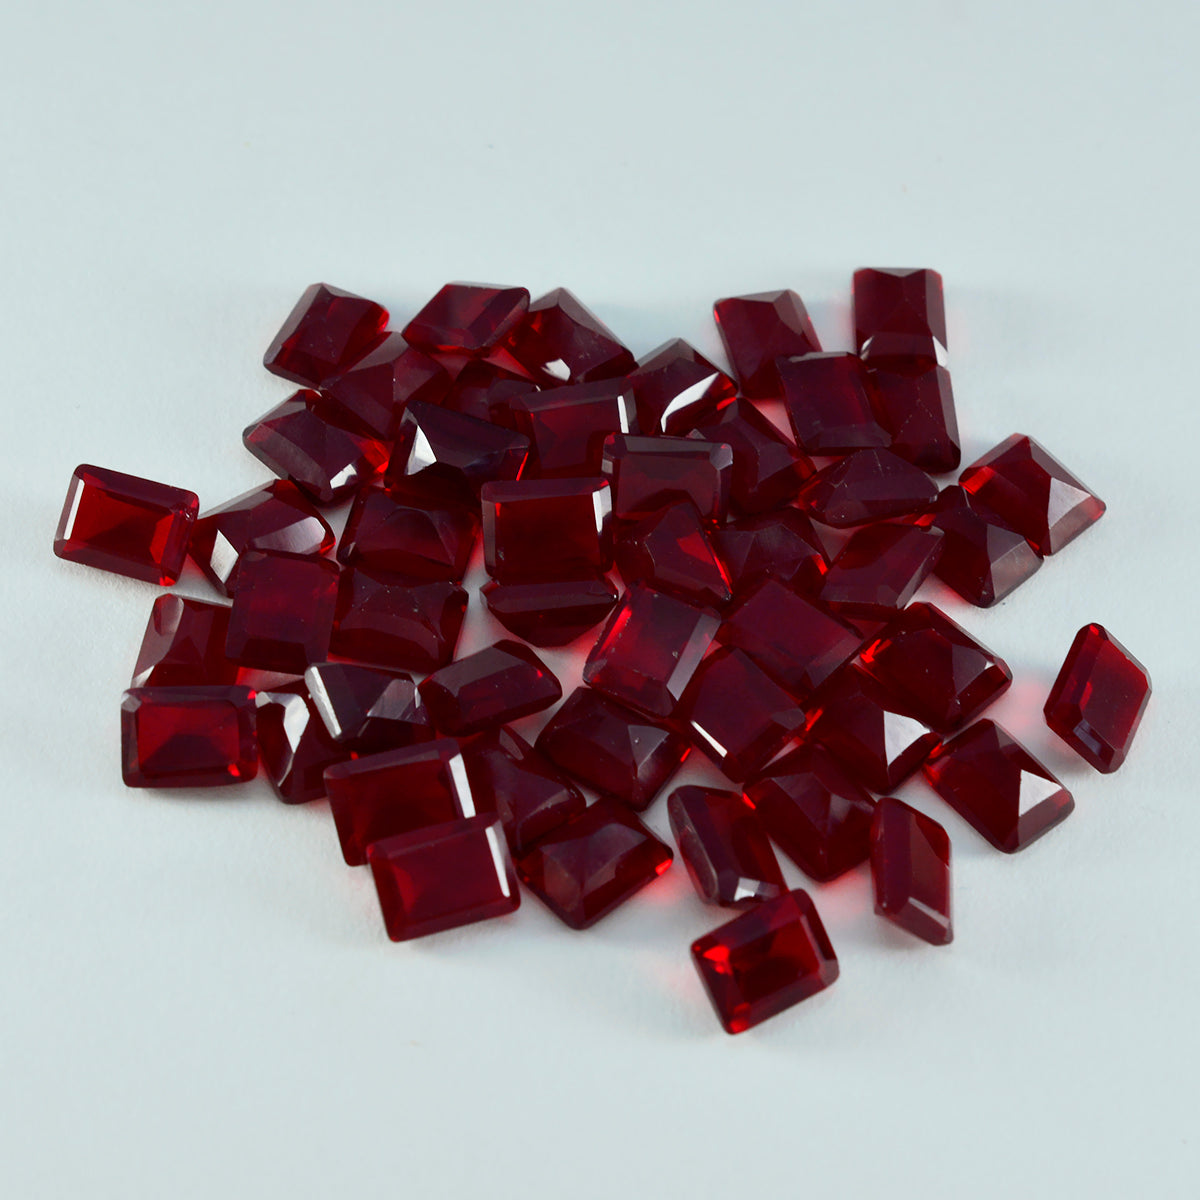 Riyogems 1 pièce rubis rouge cz à facettes 5x7mm forme octogonale belle pierre précieuse de qualité